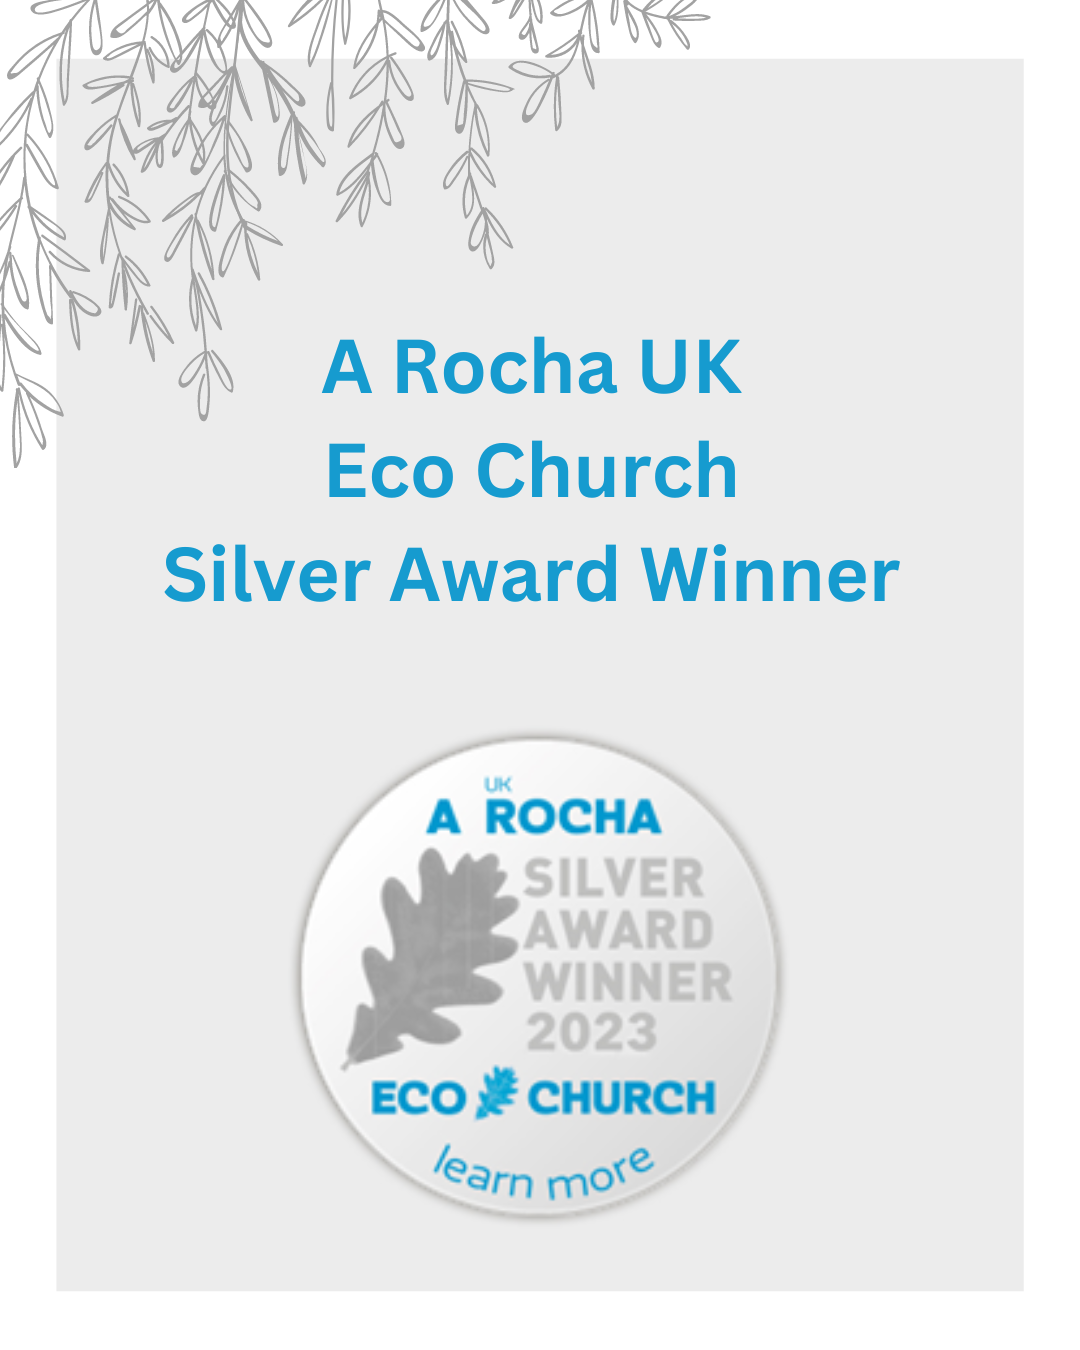 A Rocha UK Eco Church Silver Award Winner